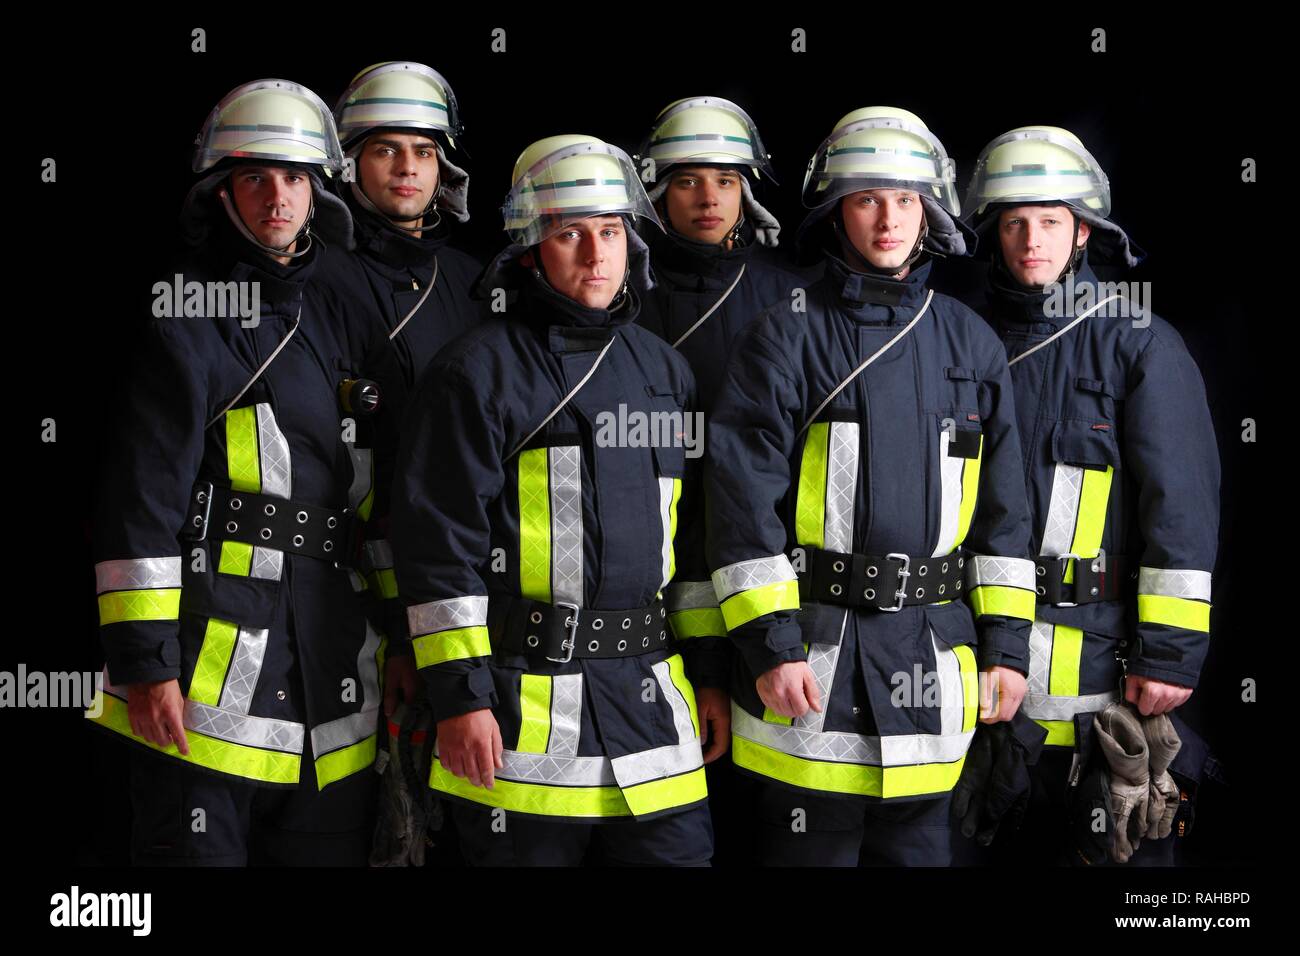 Les pompiers de porter leur uniforme pour une réponse, vêtements de protection en Nomex, un casque avec une visière, professionnel Banque D'Images